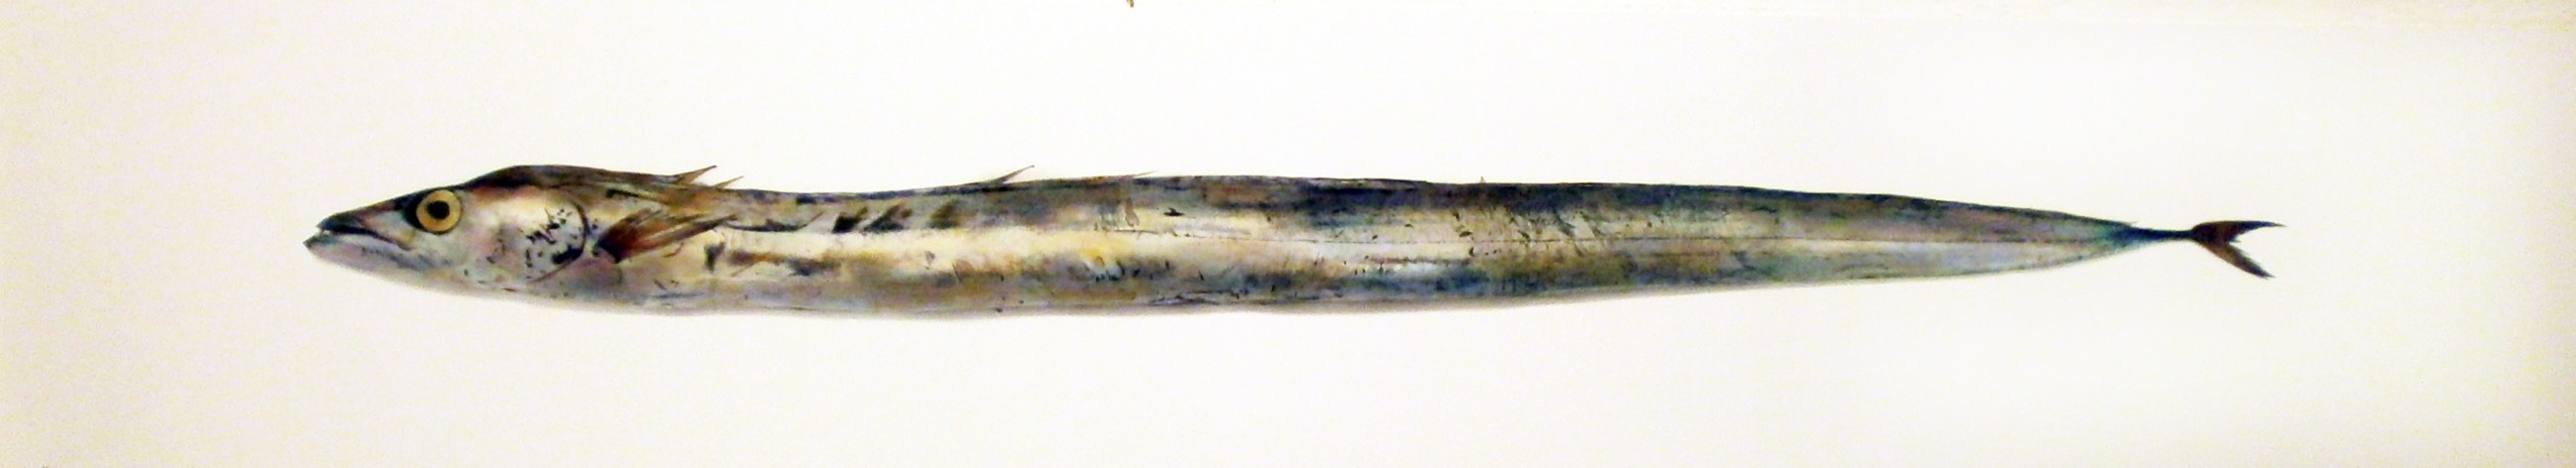 Espada branca IV, 2014